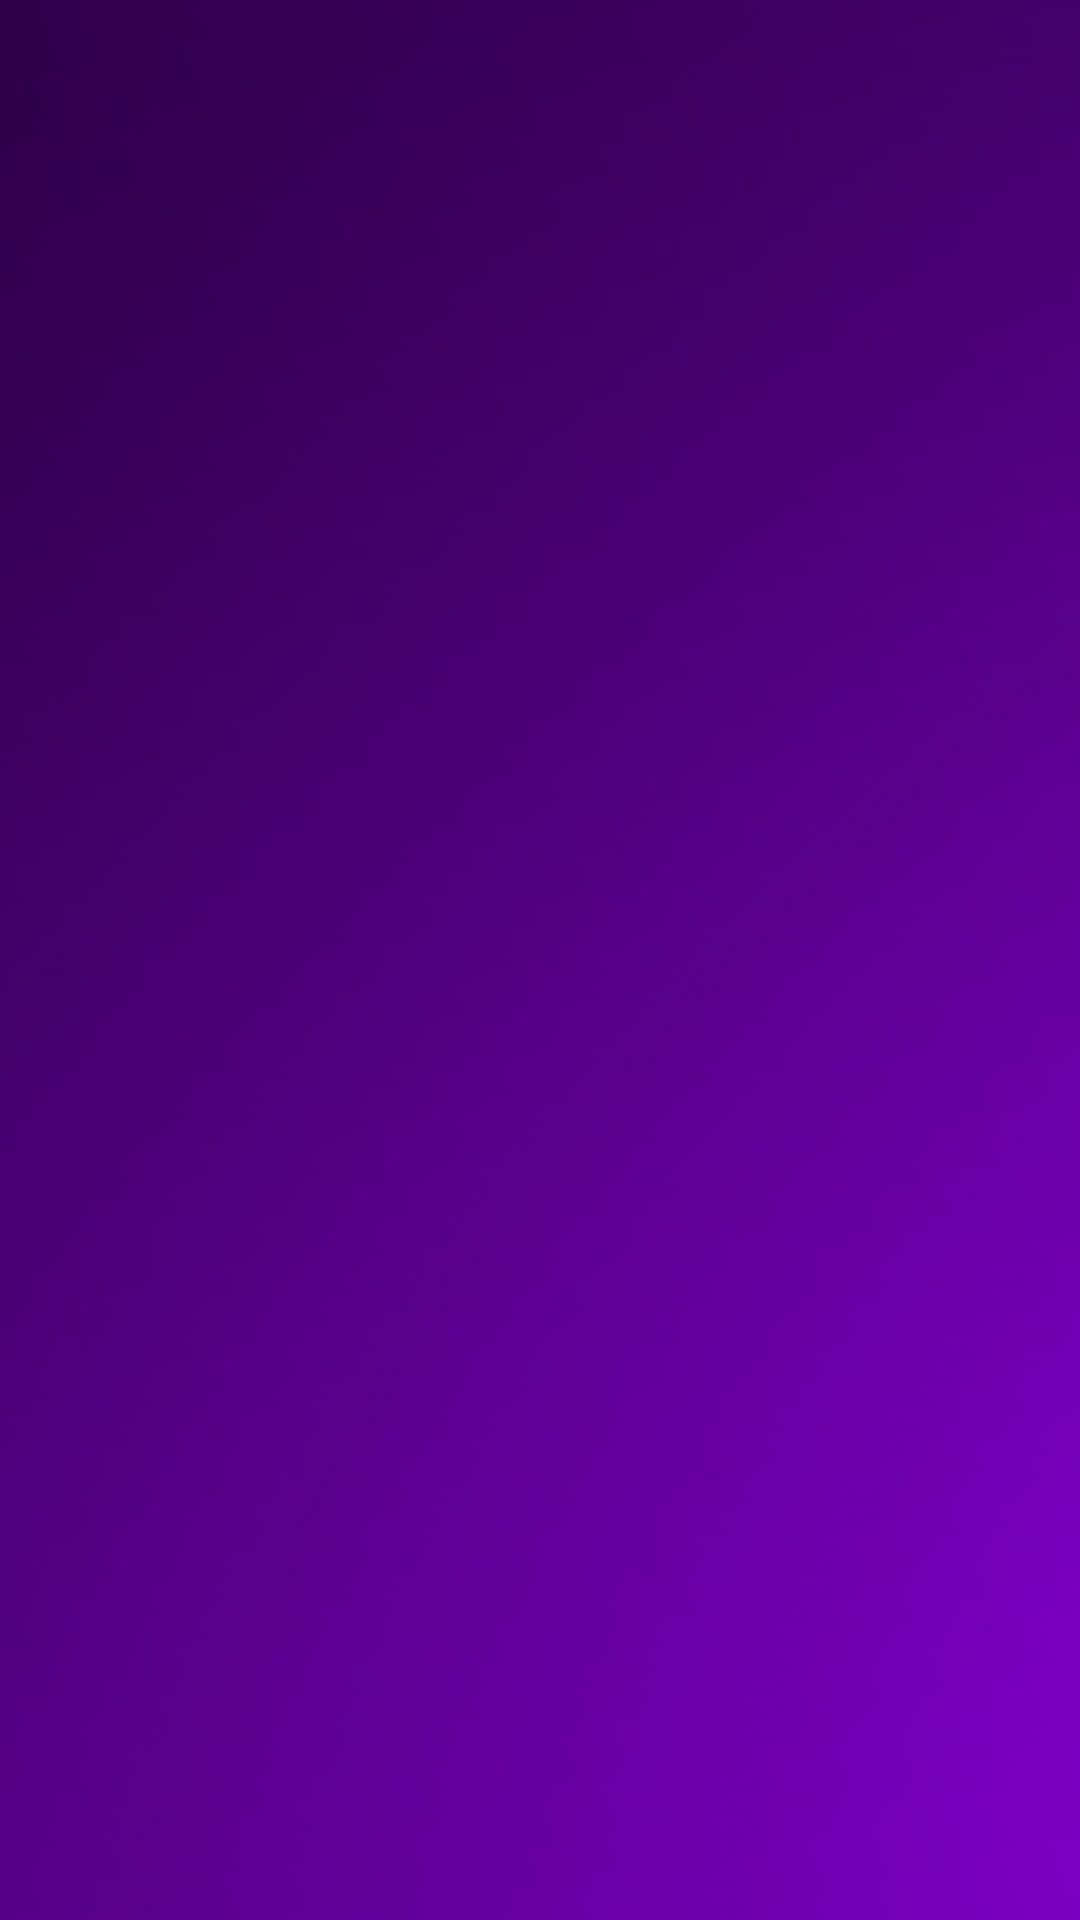 Aktualisierensie Ihren Stil Mit Dem Limited-edition Purple Phone Wallpaper